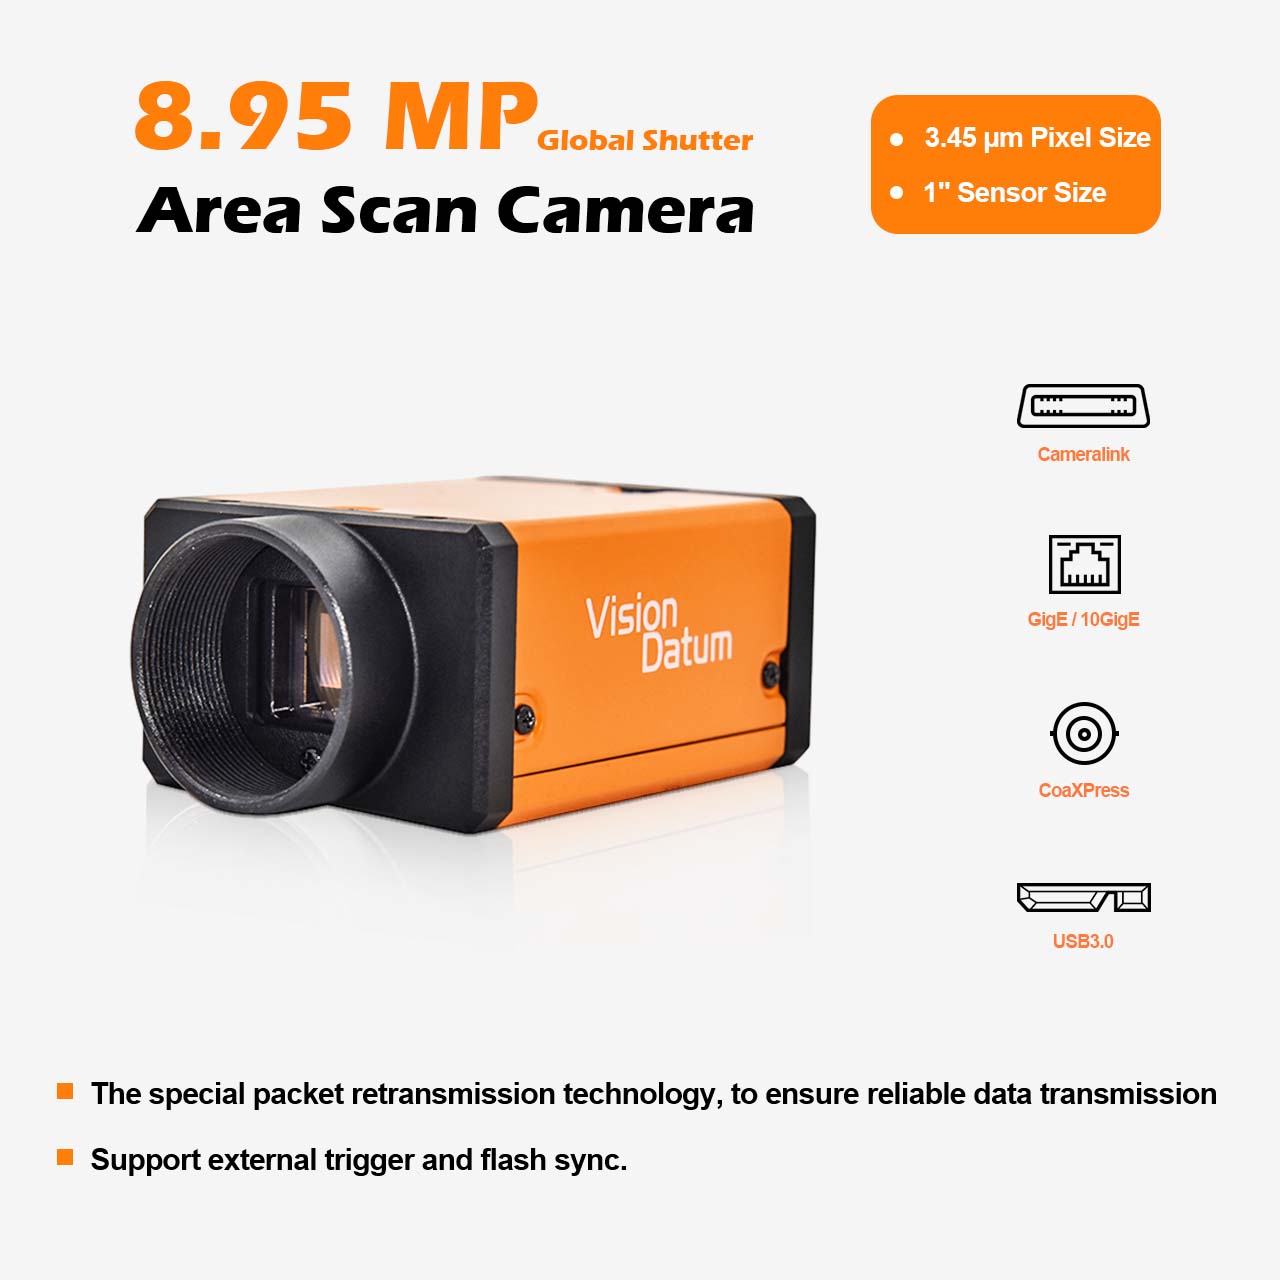 IMX267 9MP 13FPS 3.45μm 1" Global Shutter Camera